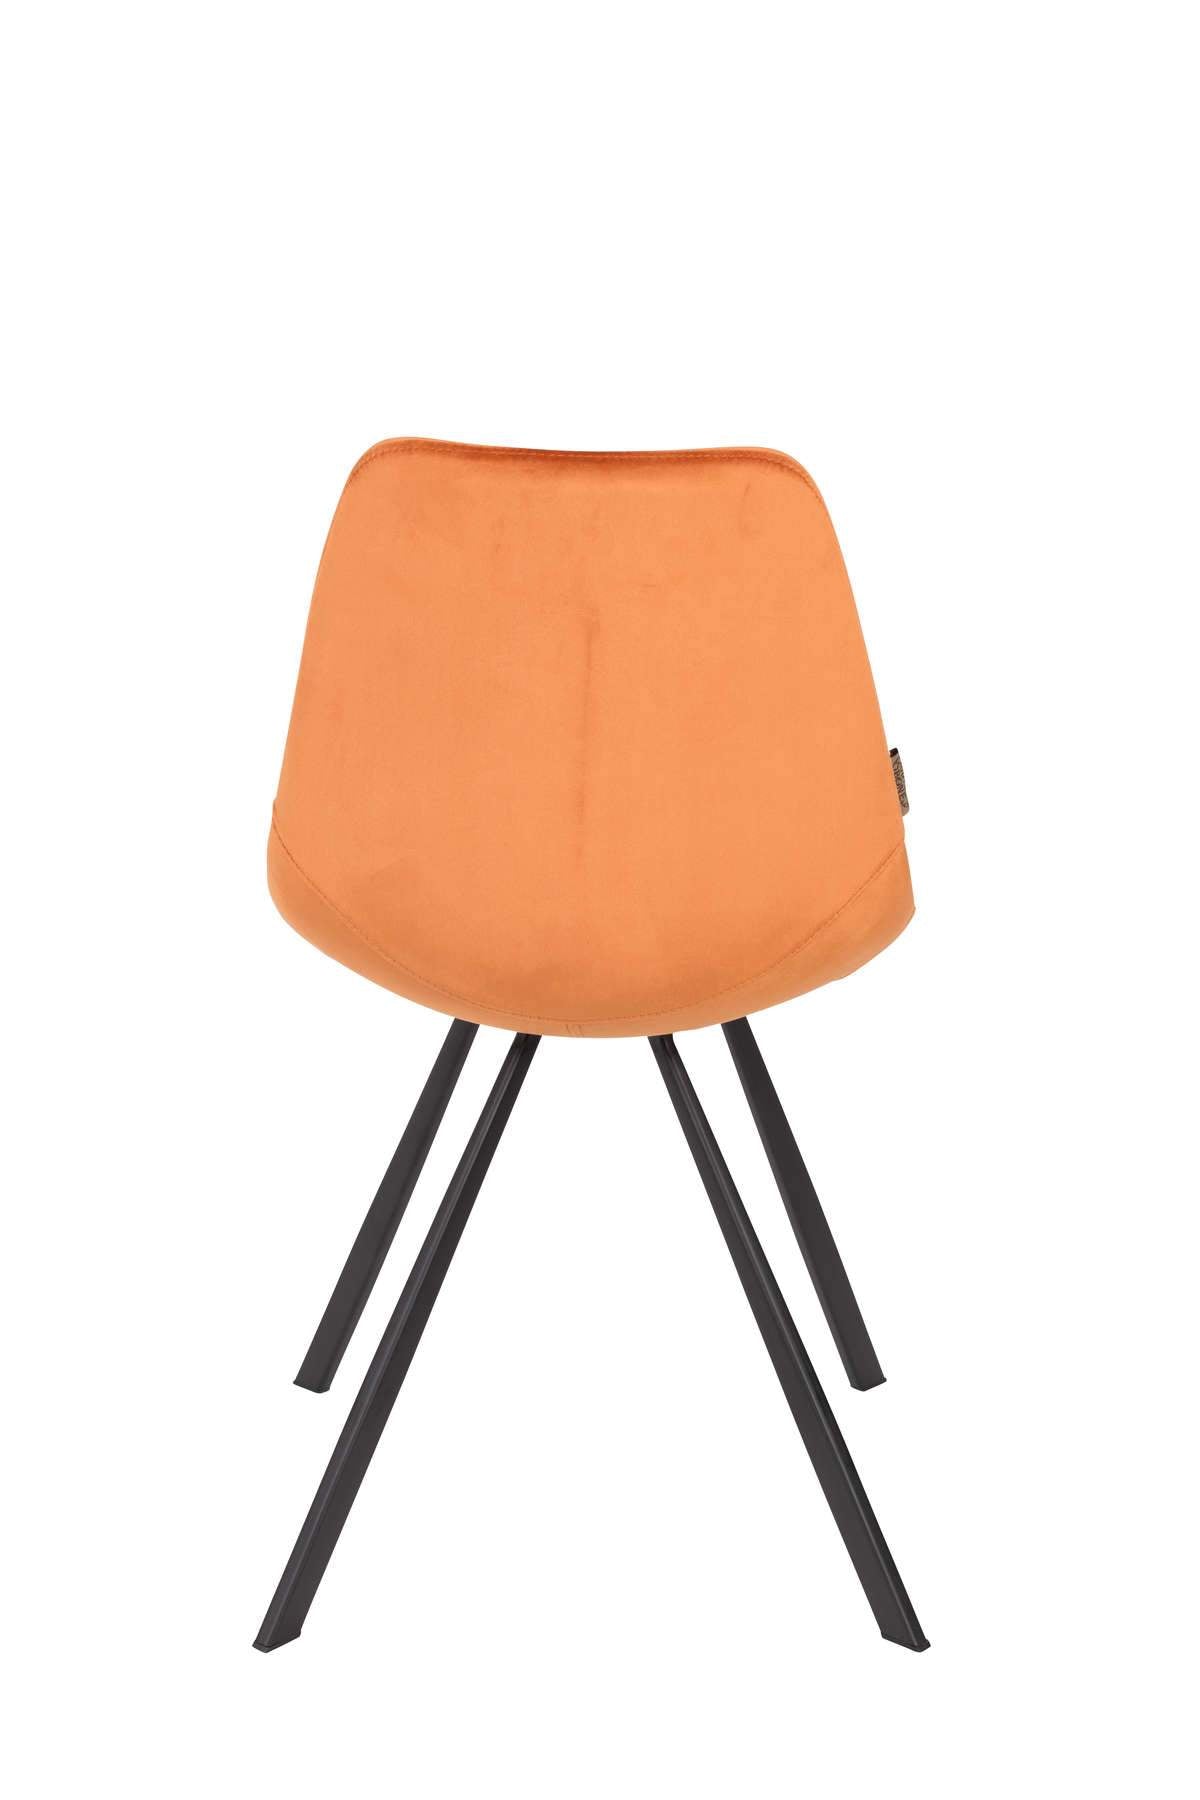 FRANKY VELVET orange chair, Dutchbone, Eye on Design